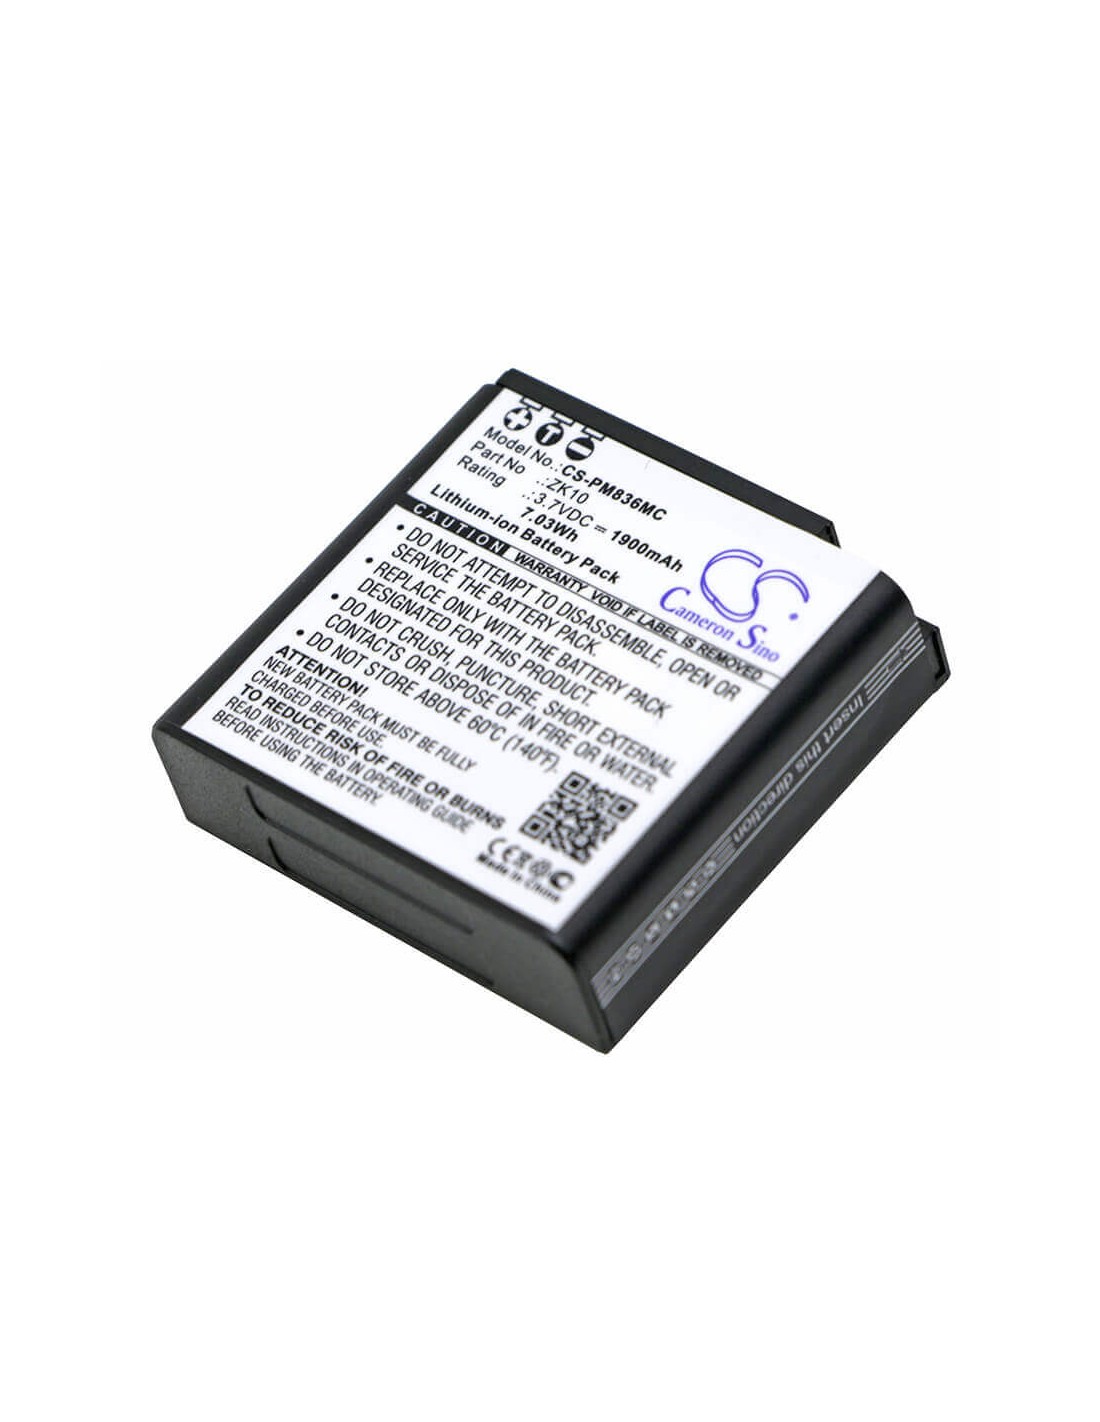 Battery for Polaroid, Im1836 3.7V, 1900mAh - 7.03Wh